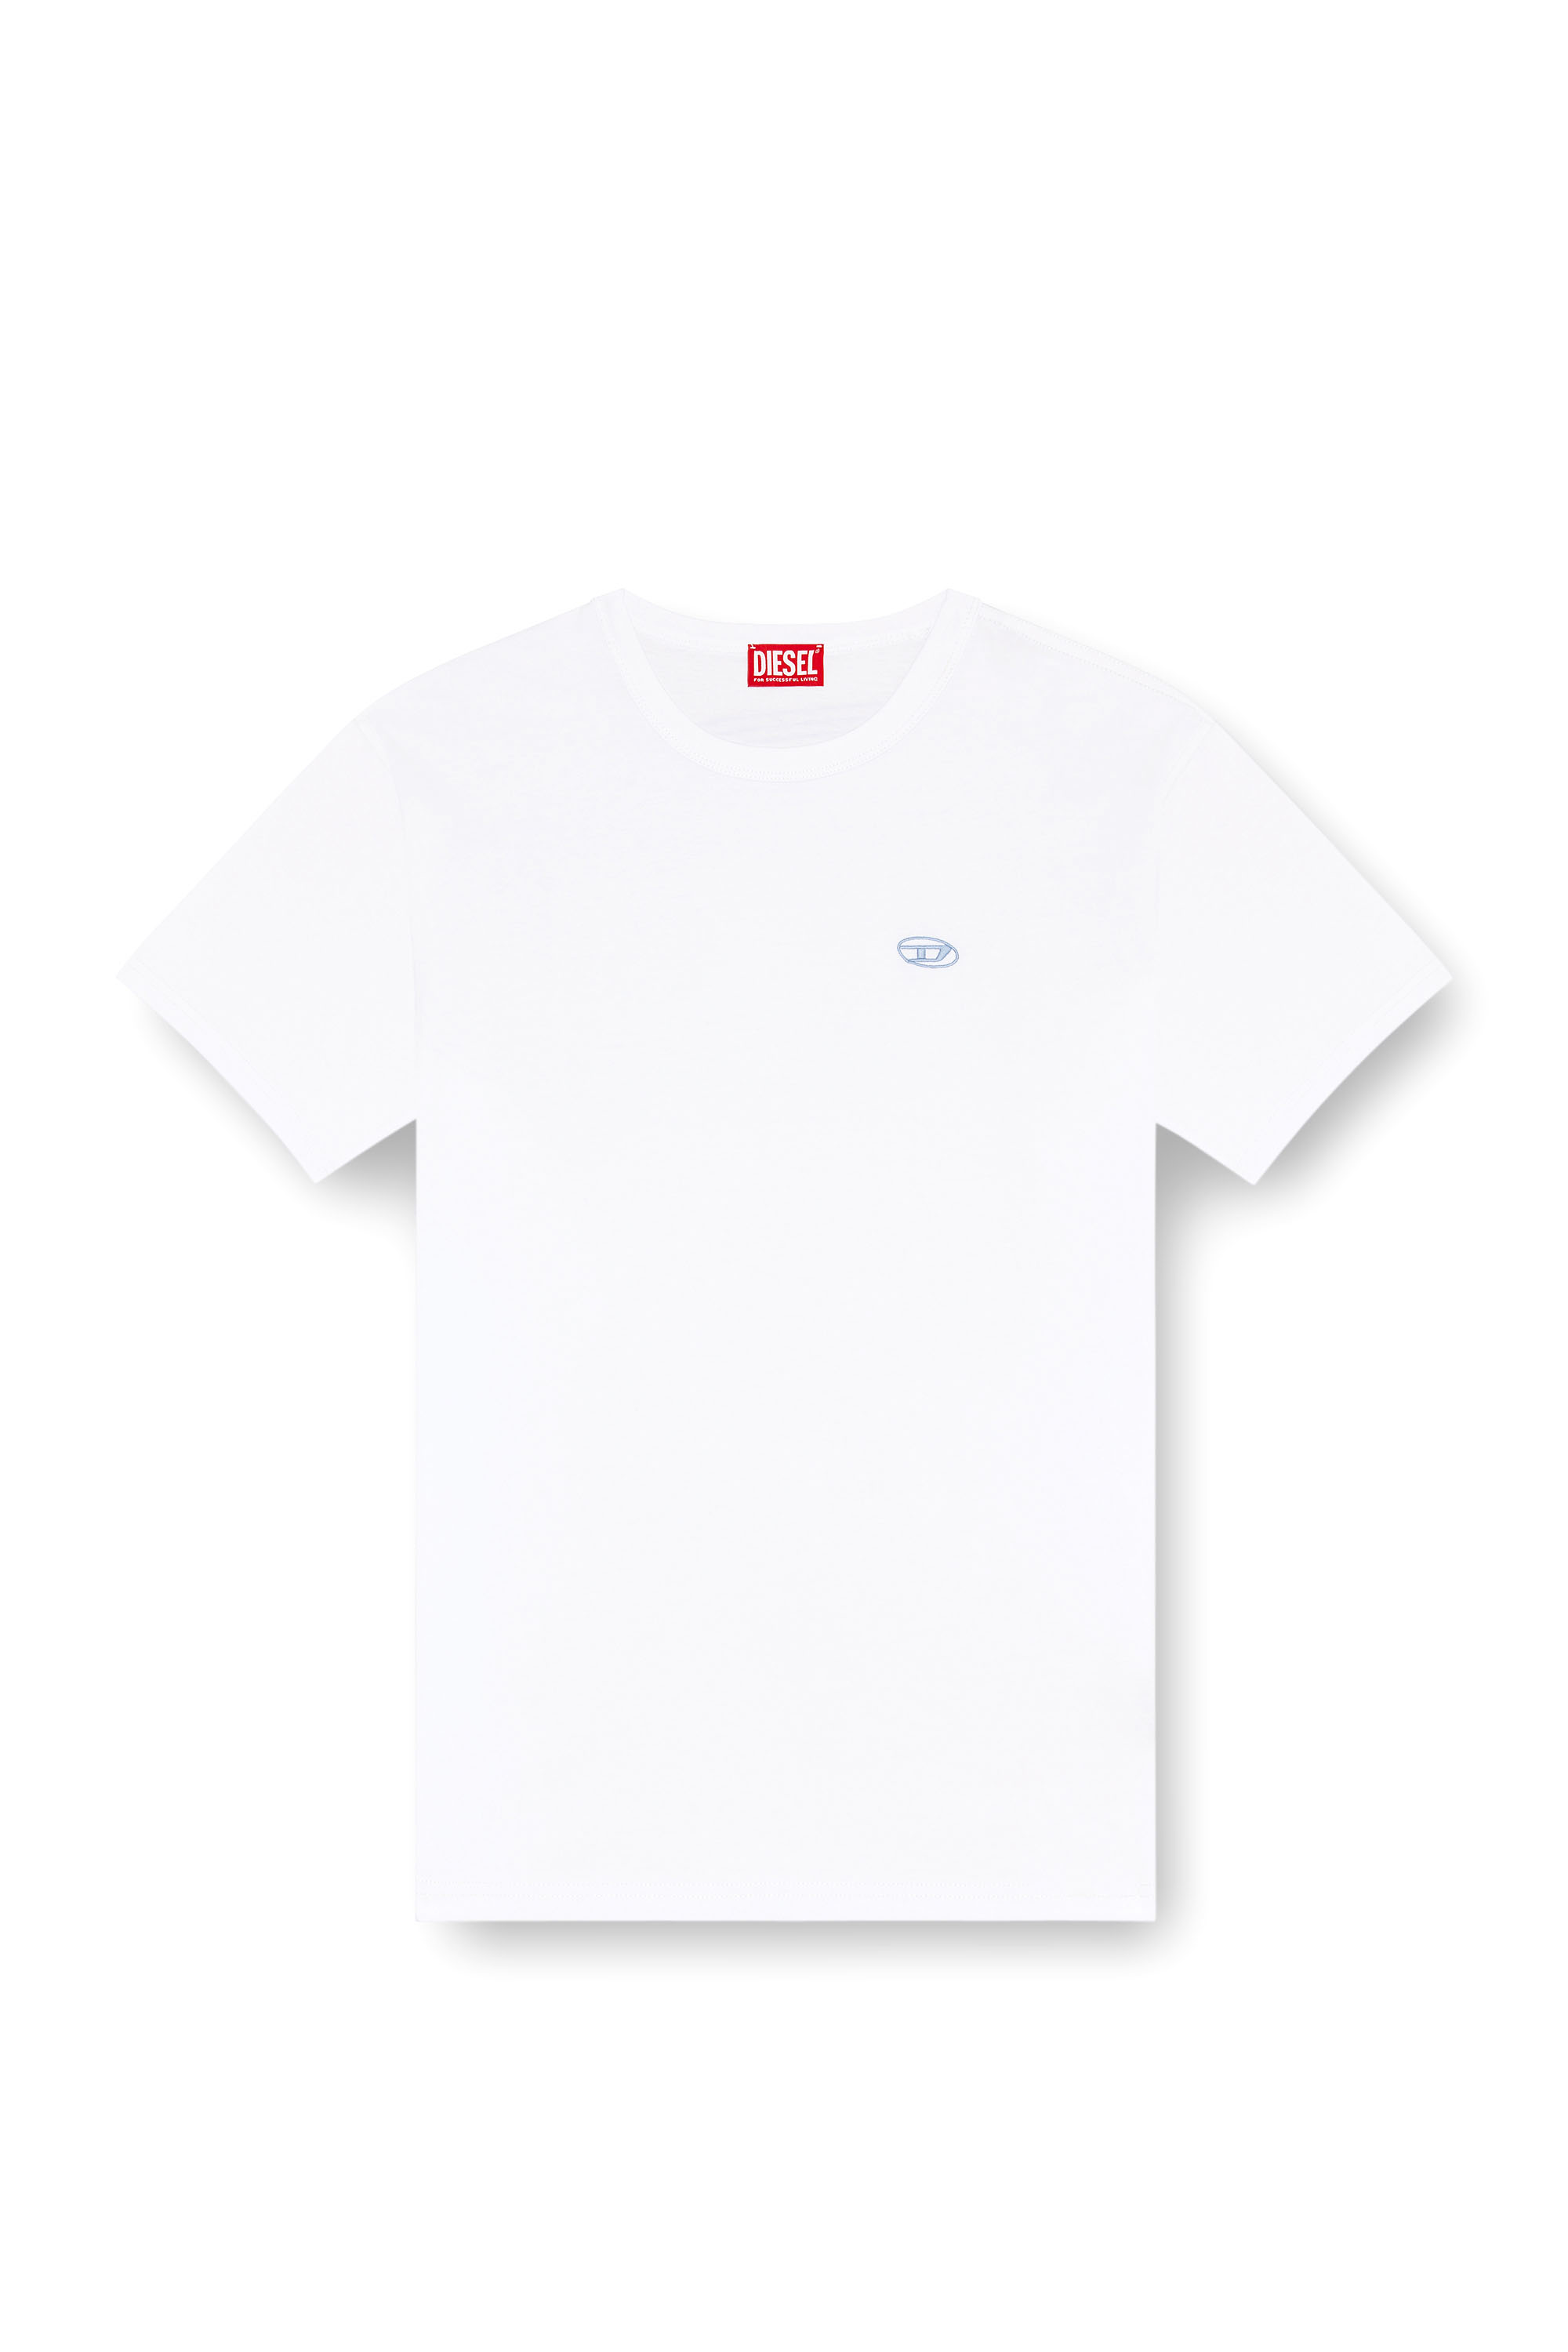 Diesel - T-BOXT-K18, Hombre Camiseta con estampado Oval D y bordado in Blanco - Image 3